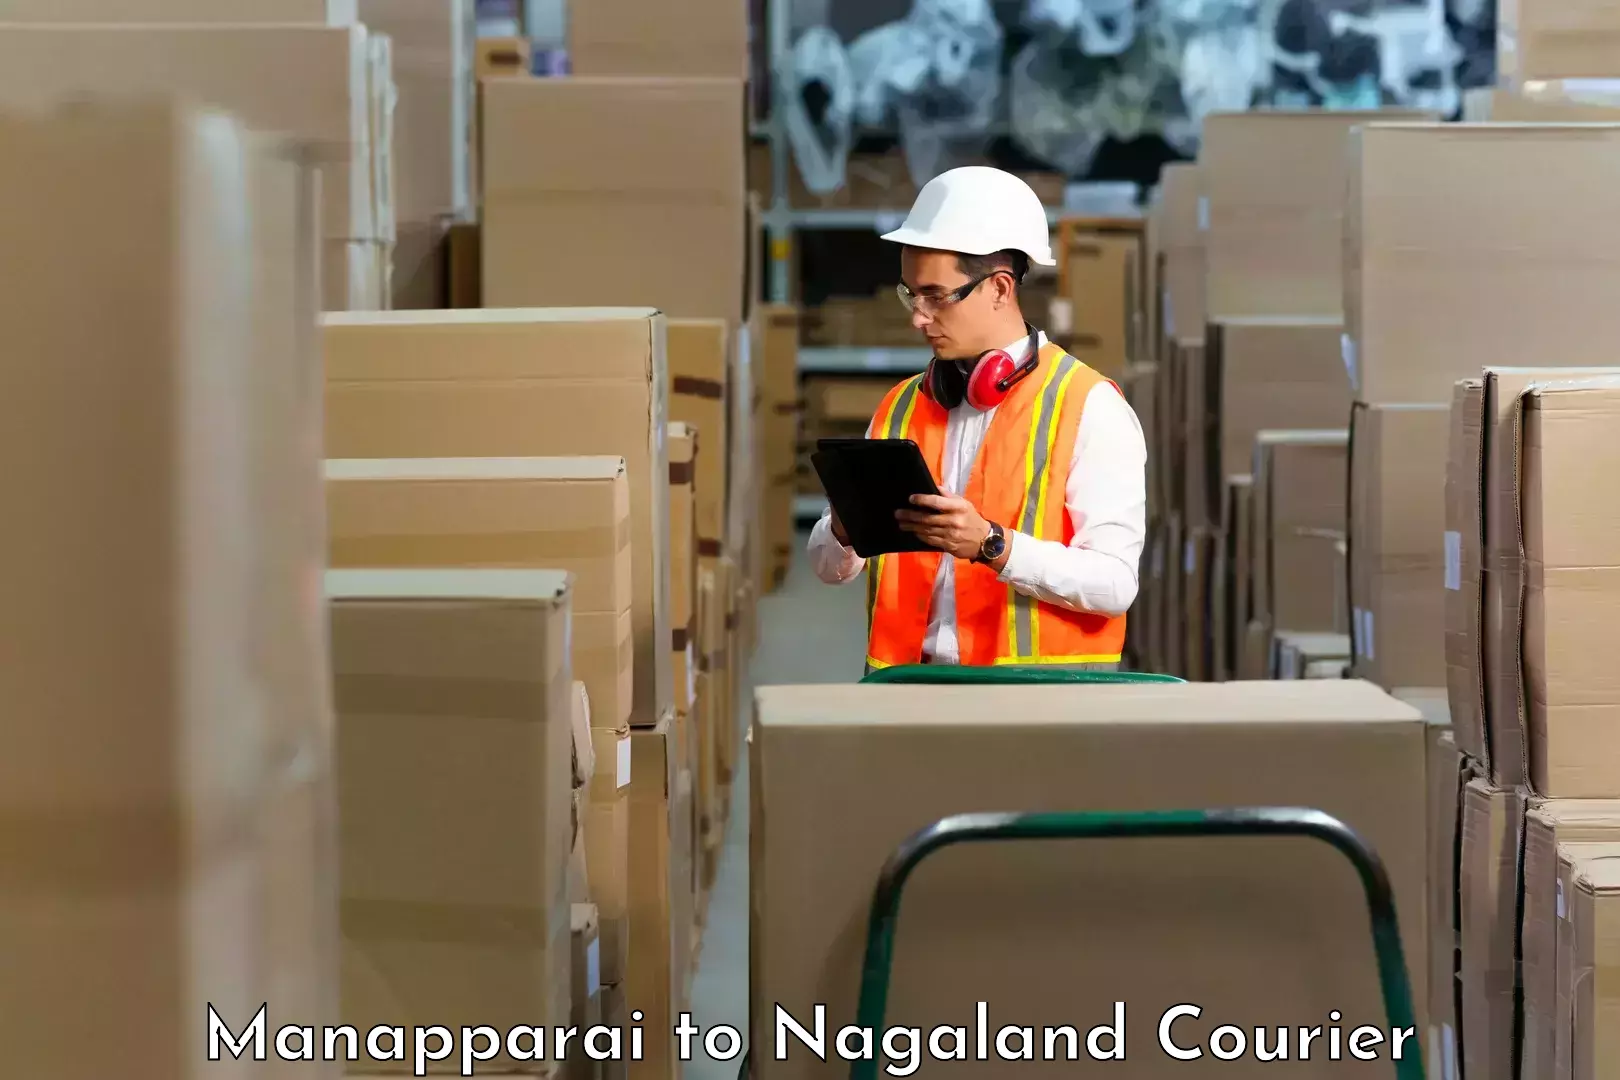 Custom courier packaging Manapparai to Mokokchung